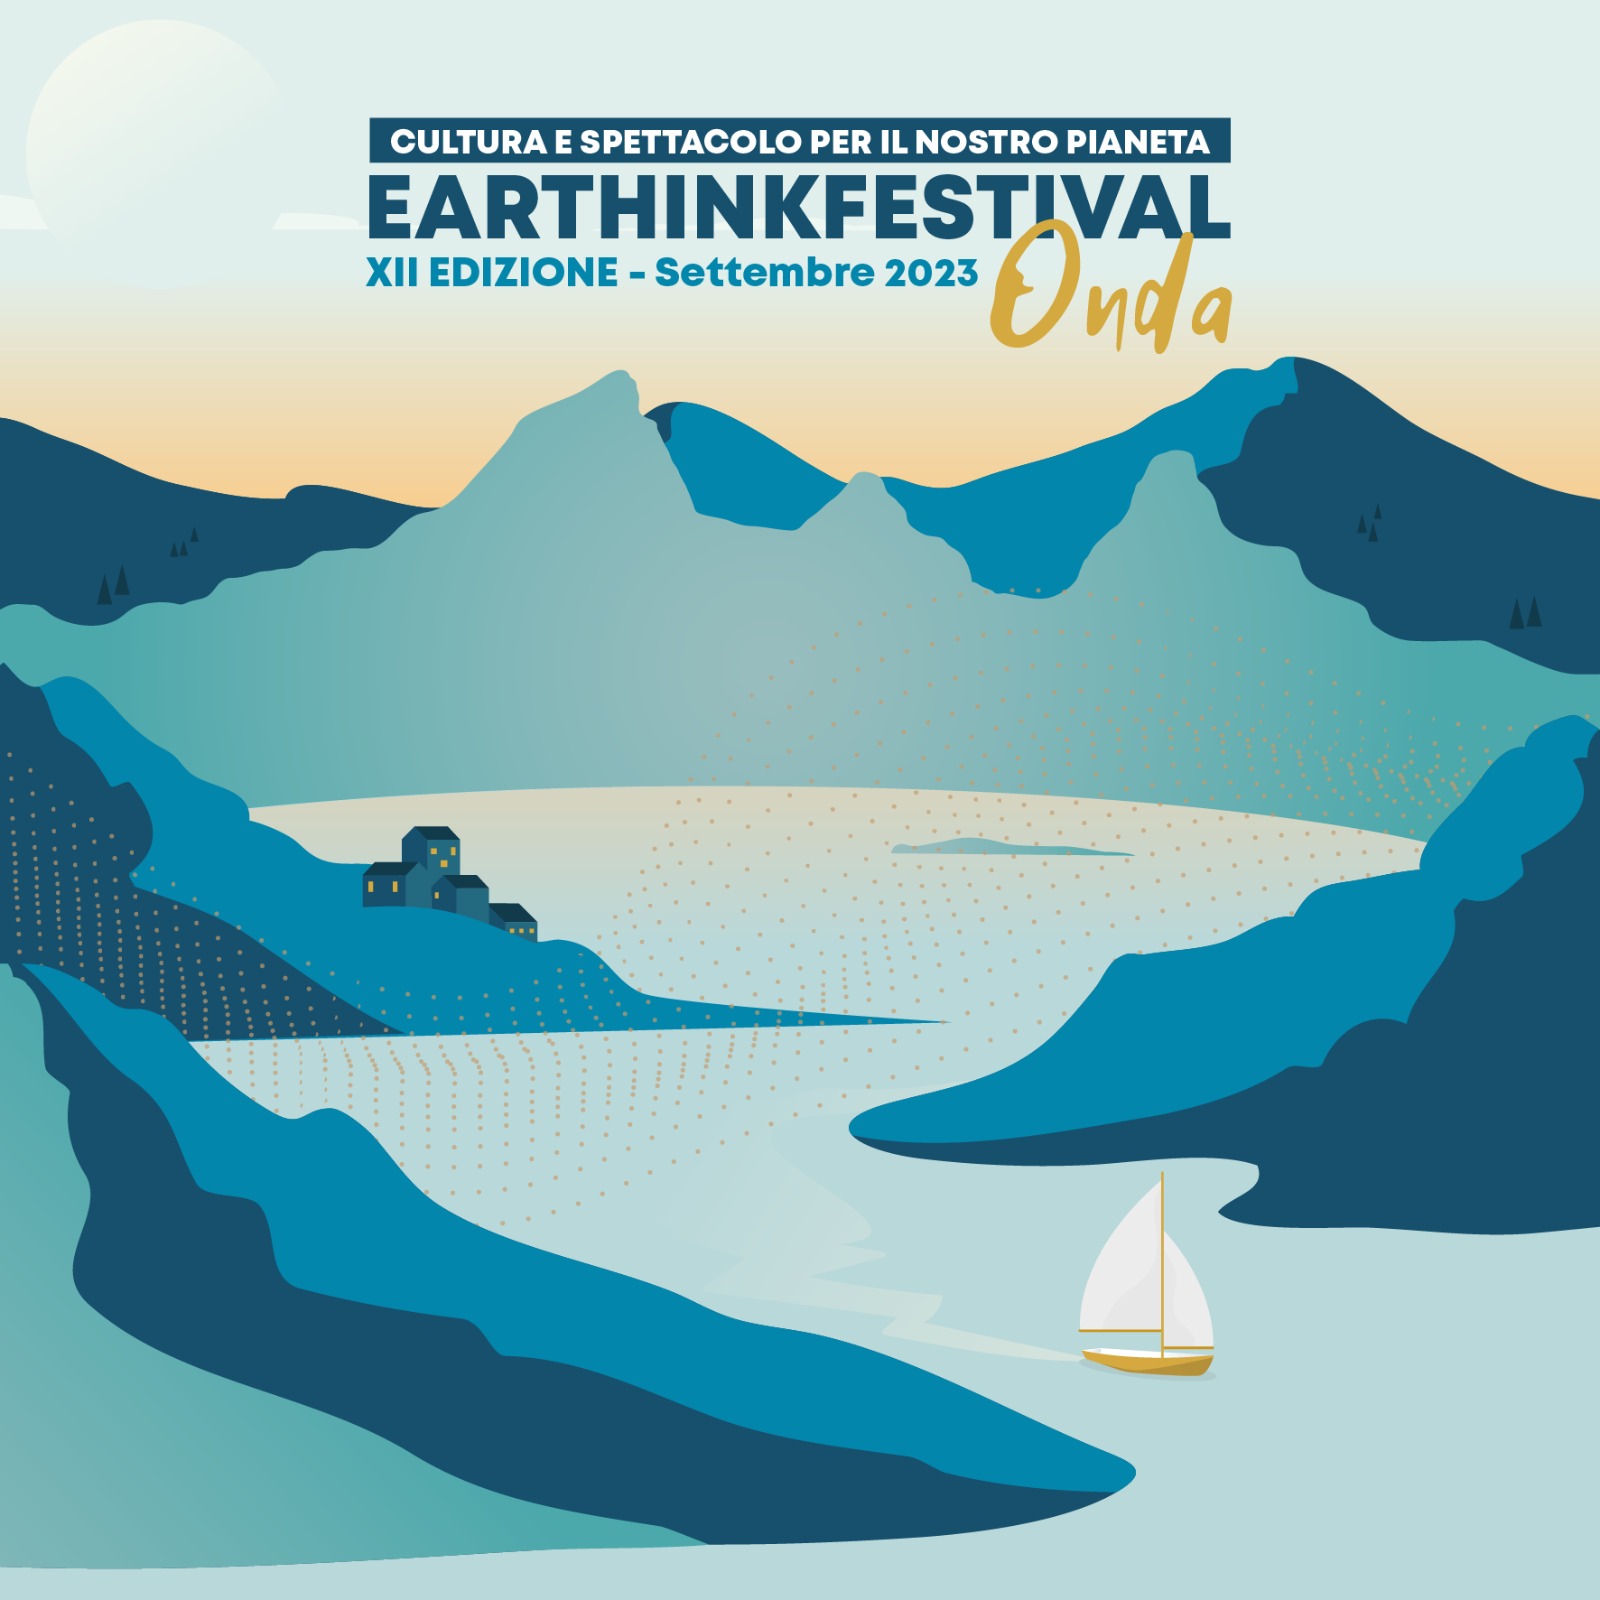 Earthink Festival 23, è in arrivo l’ONDA della dodicesima edizione! 🌊